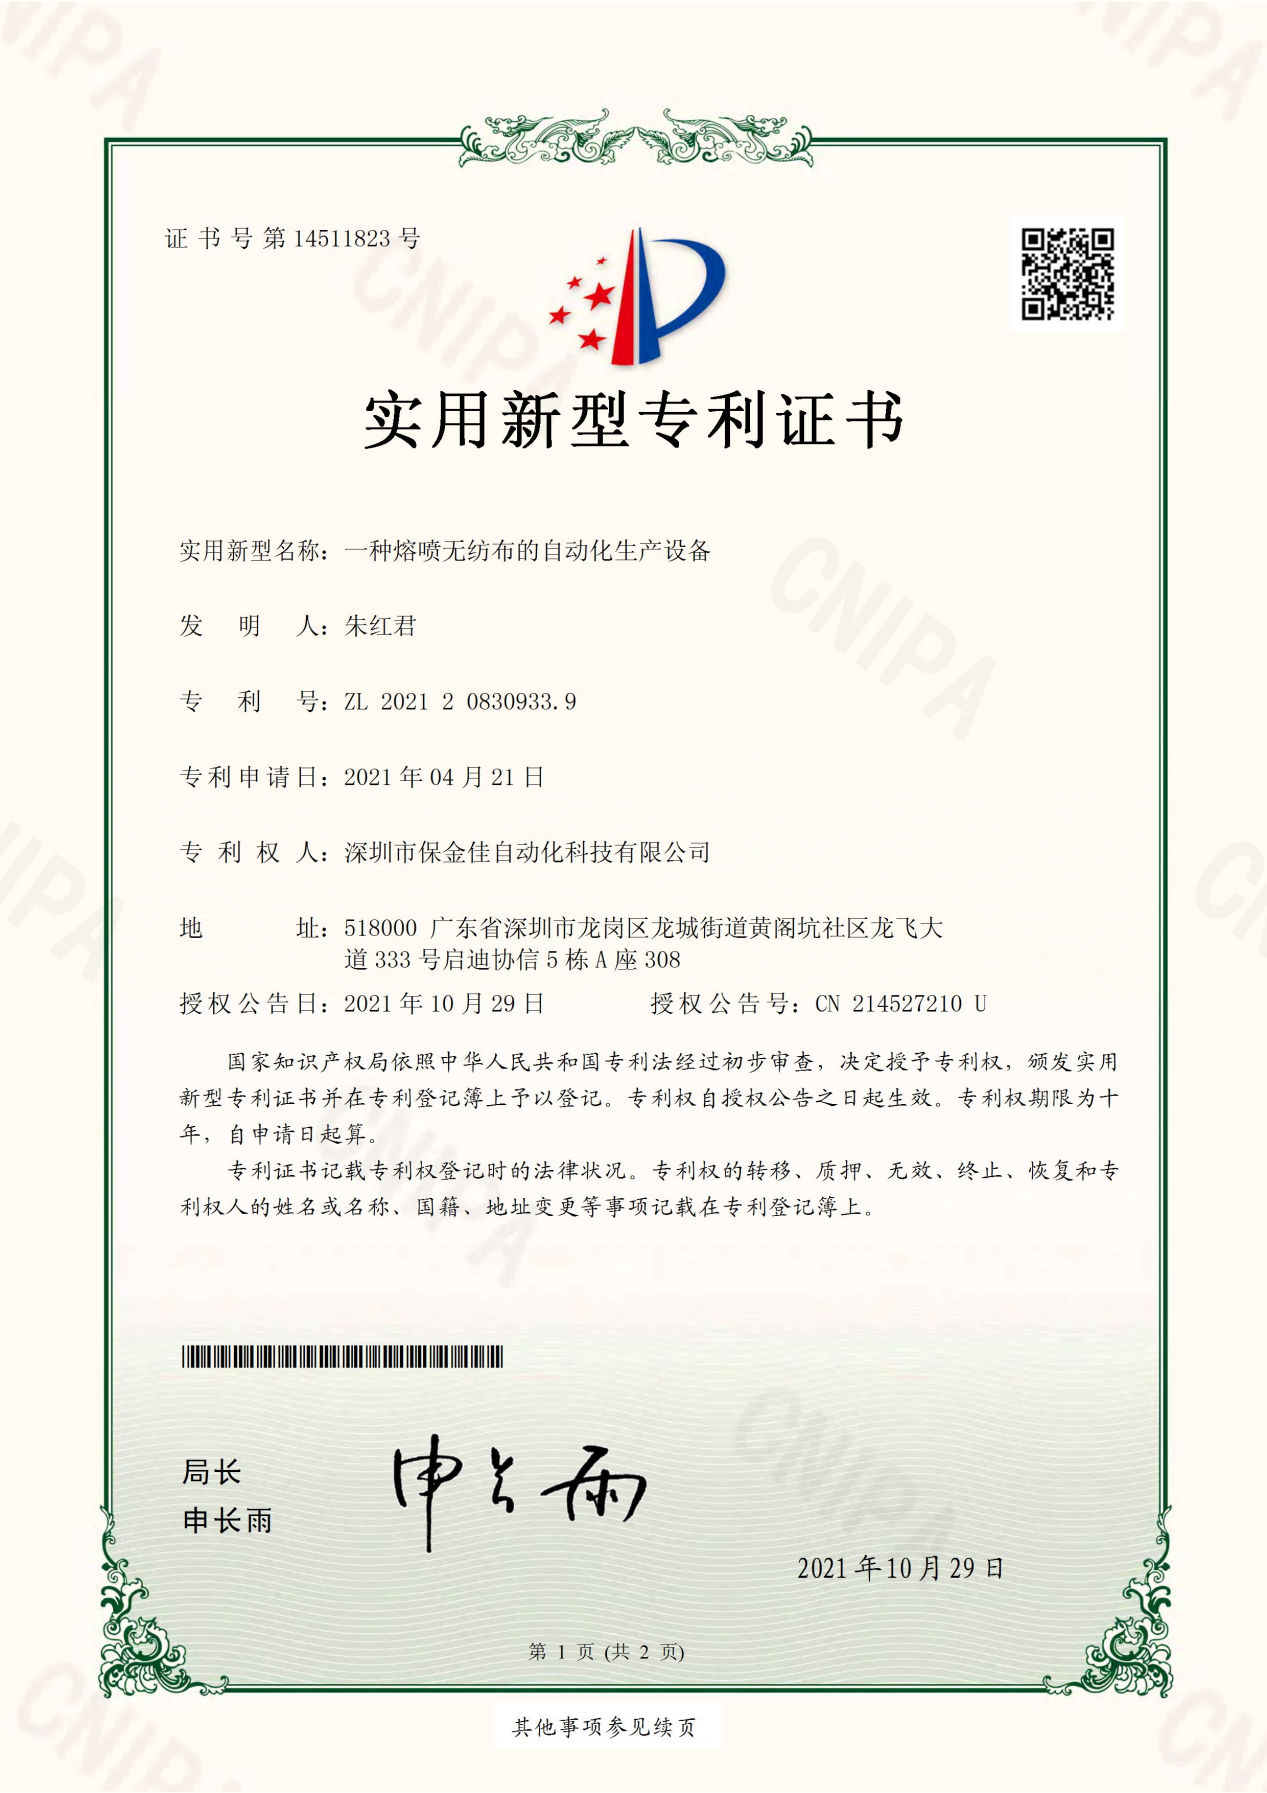 Certificate-5